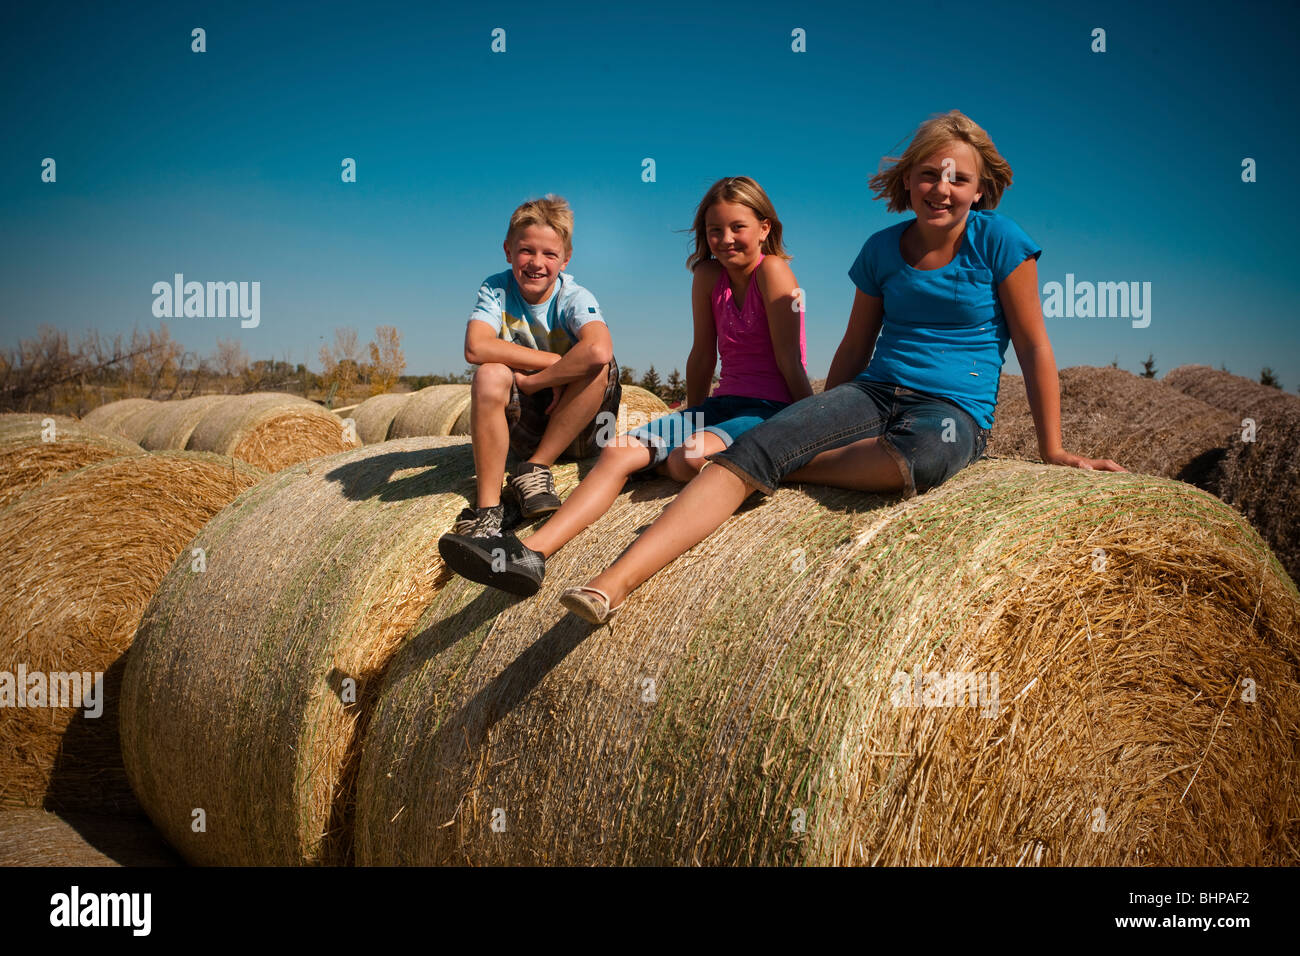 Junge (12) Mädchen (10) und Mädchen (12) sitzt auf Strohballen; Redvers, Saskatchewan, Kanada Stockfoto